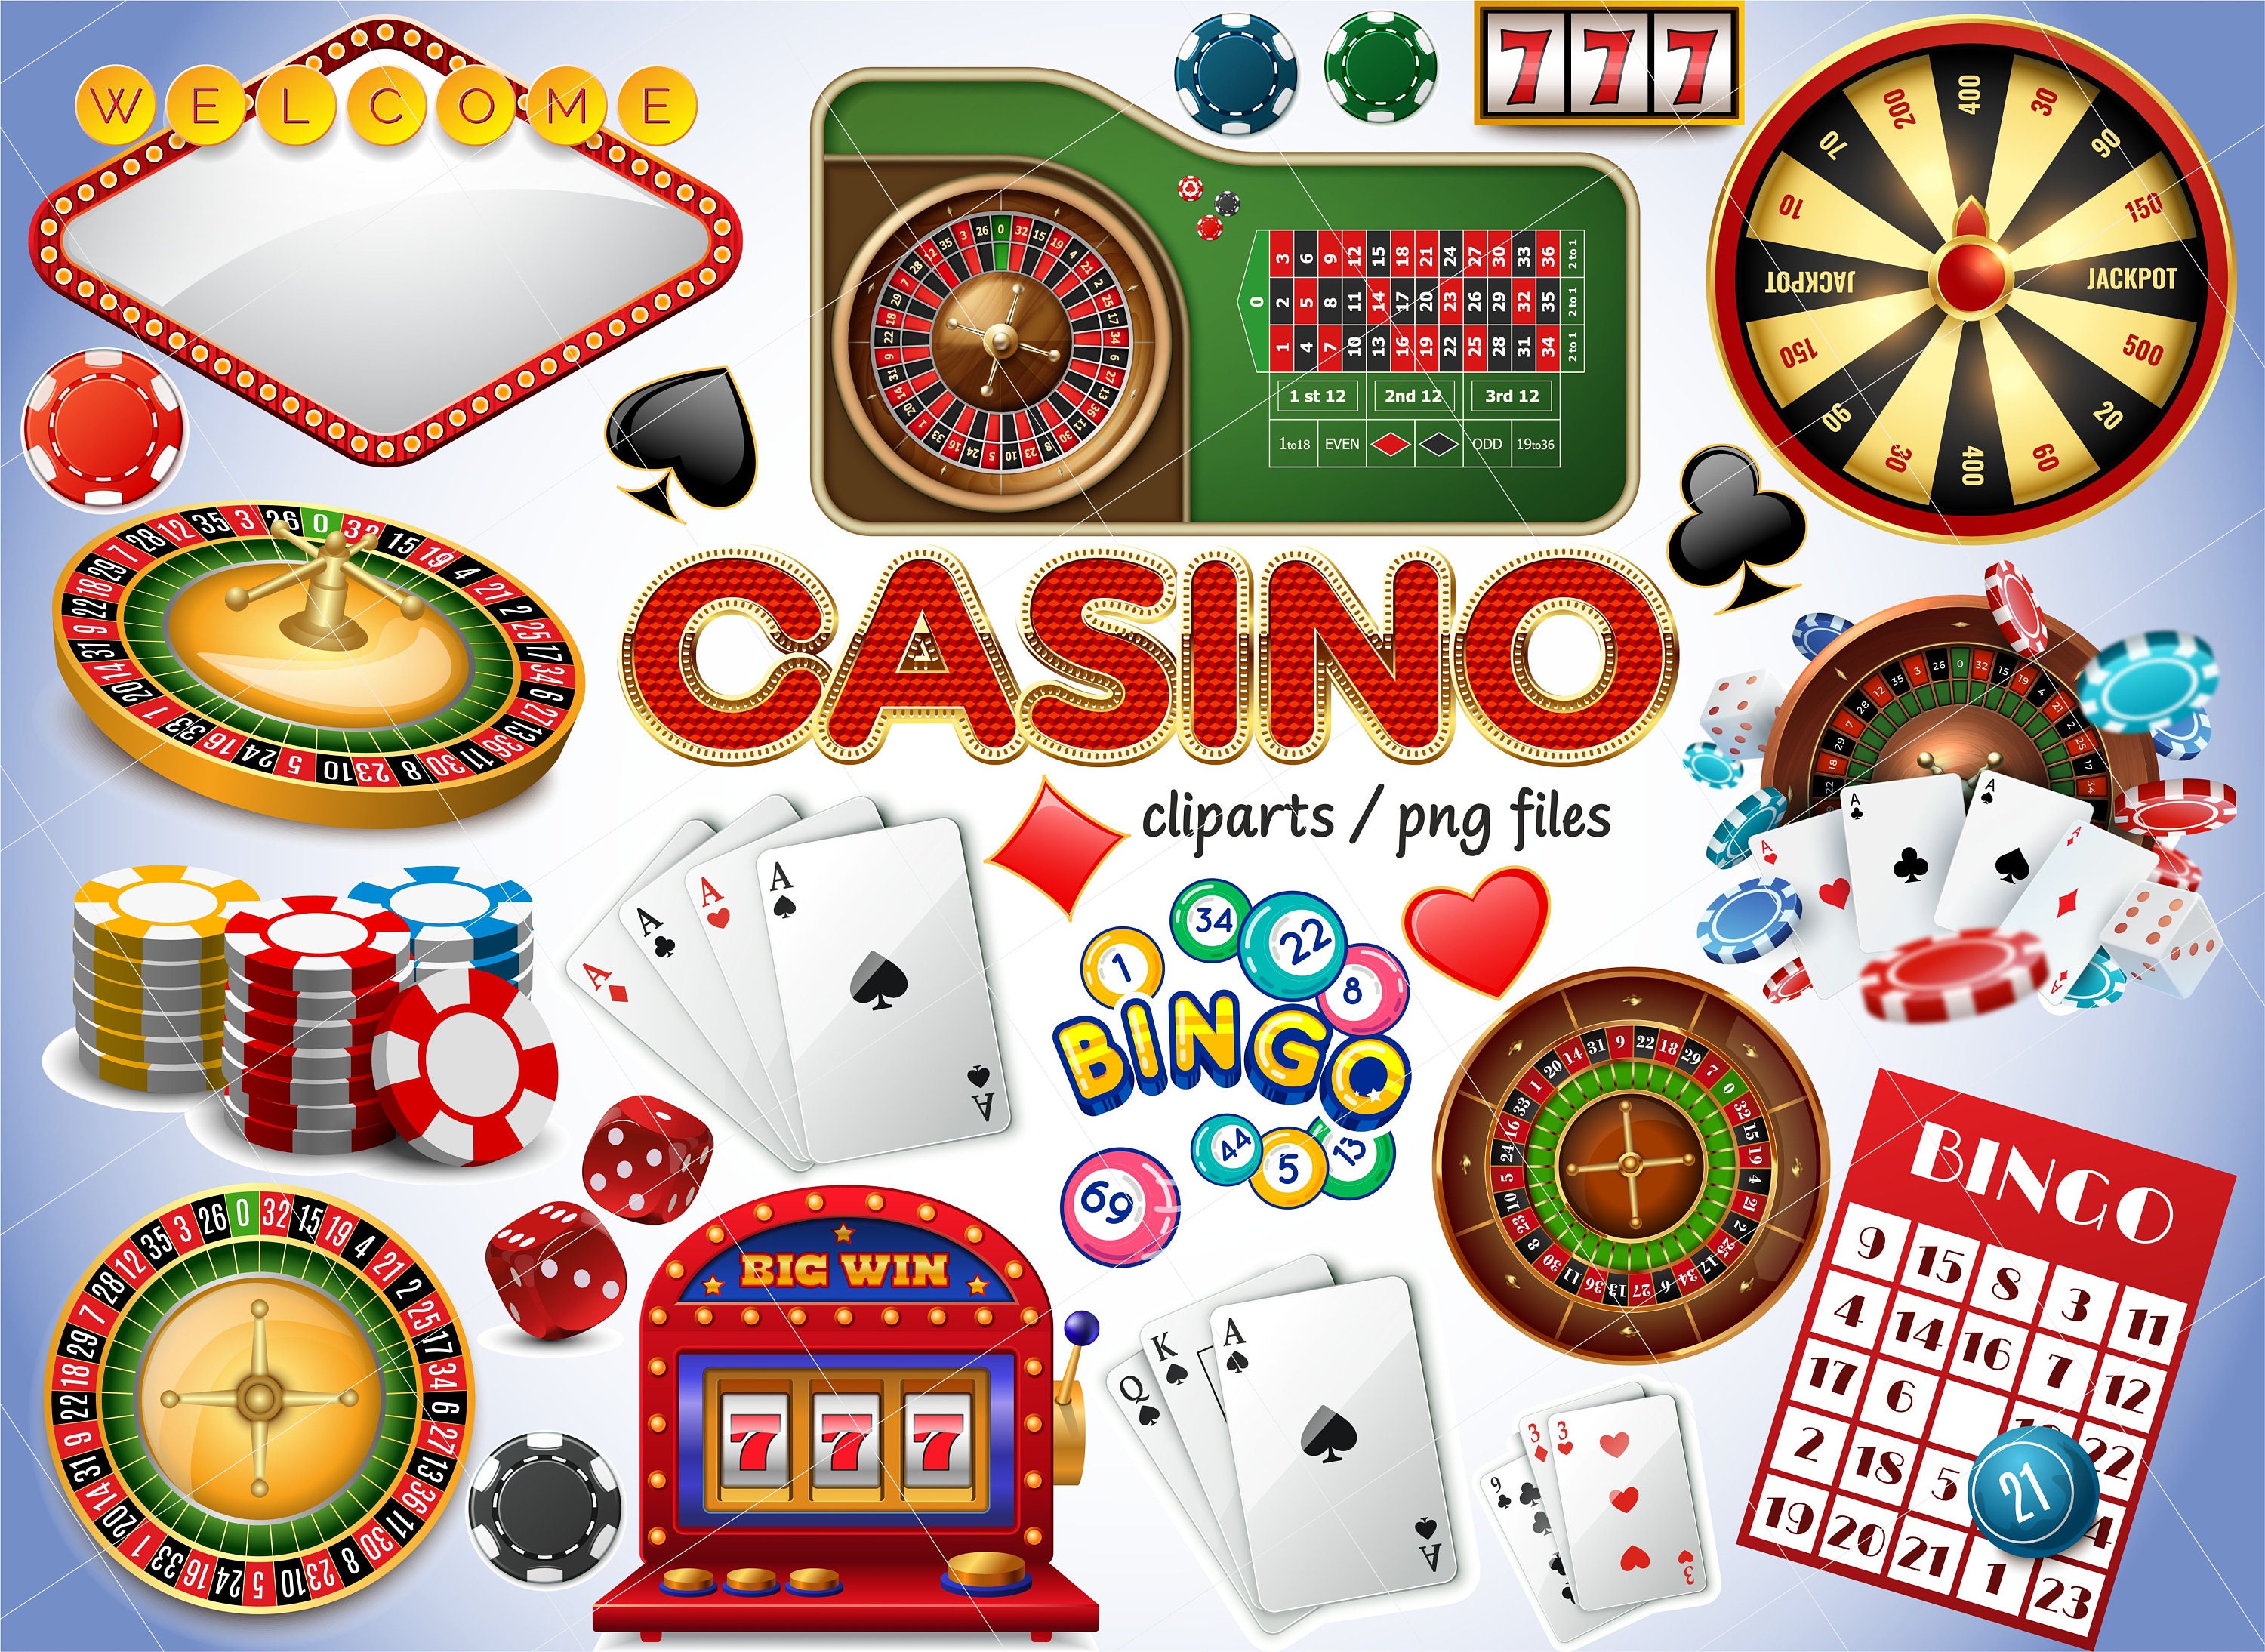 New Baum Games Casinos Reviews for 2023 - Software